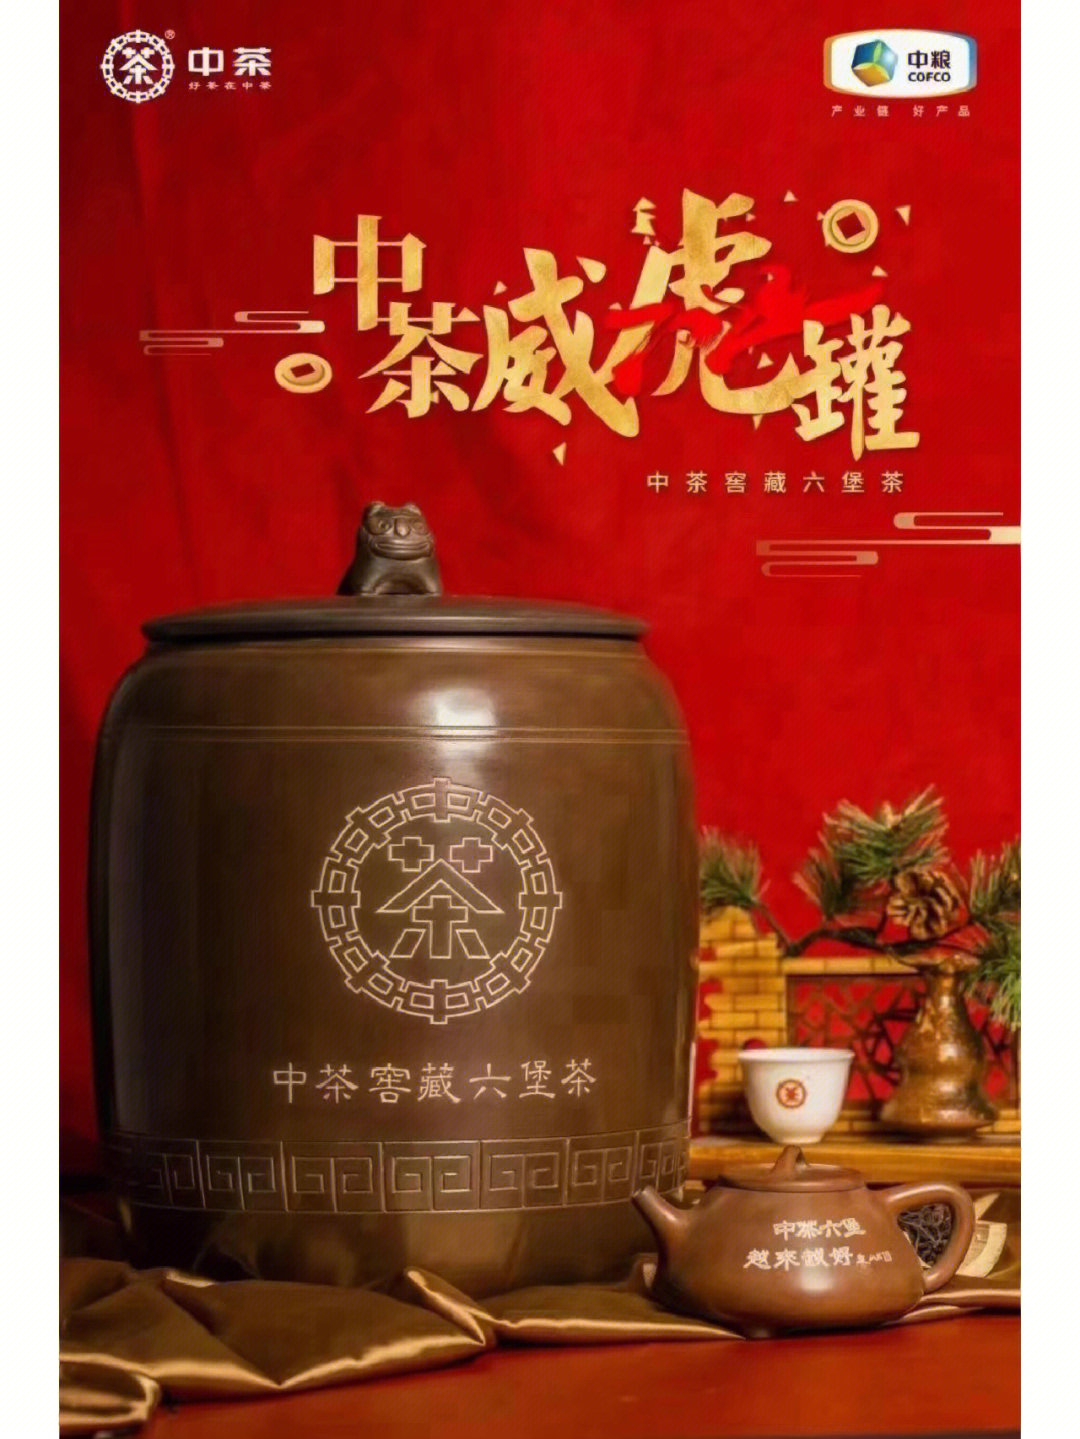 中茶窖藏六堡茶生肖系列产品之威虎罐——猛虎出山